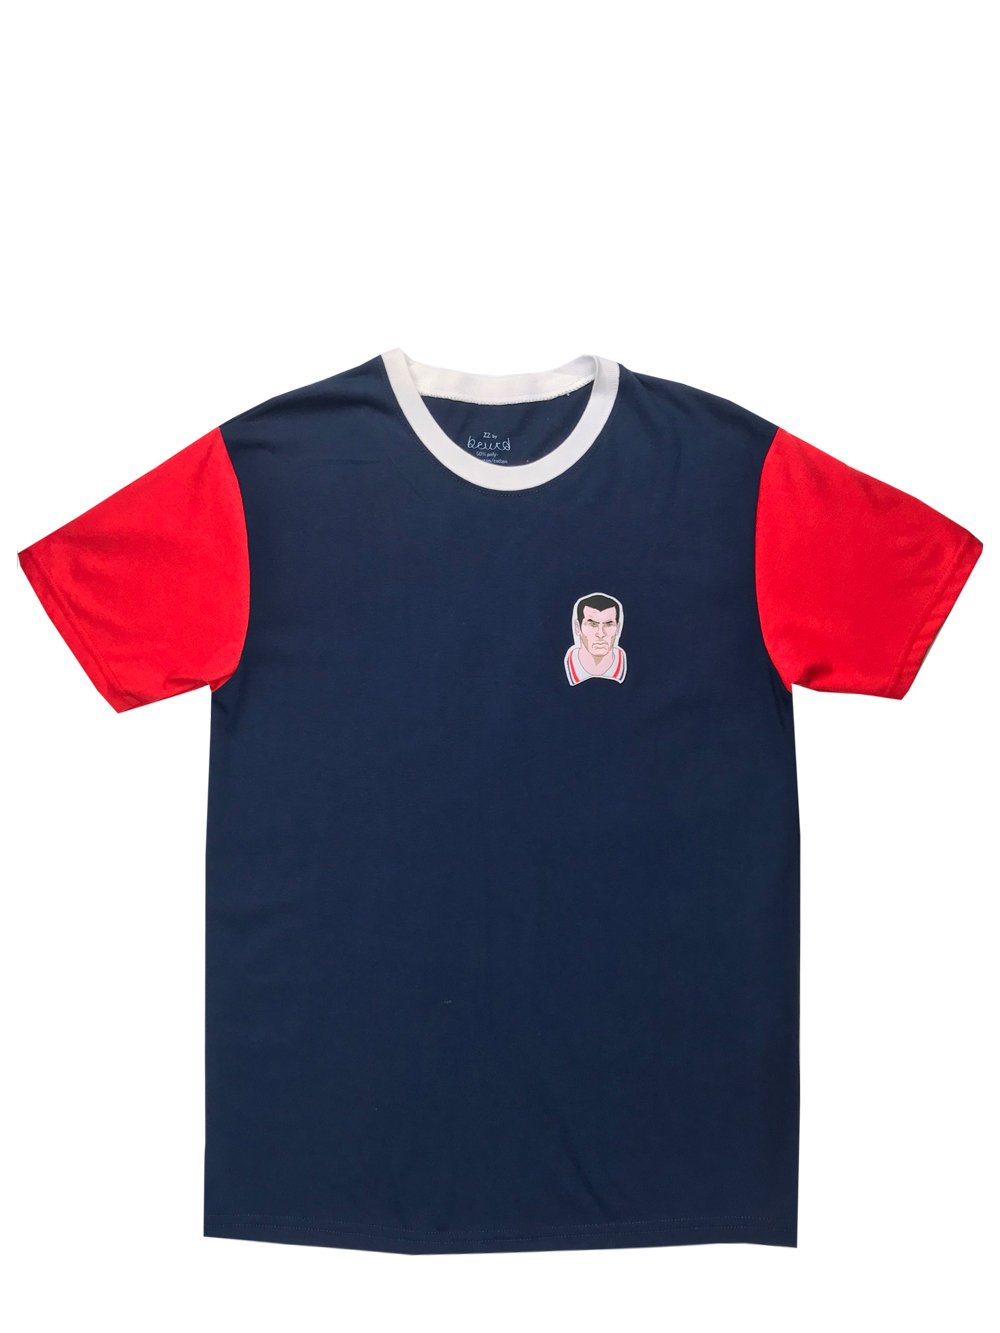 T-shirt colorblock rouge et bleu avec patch tissé ZZ